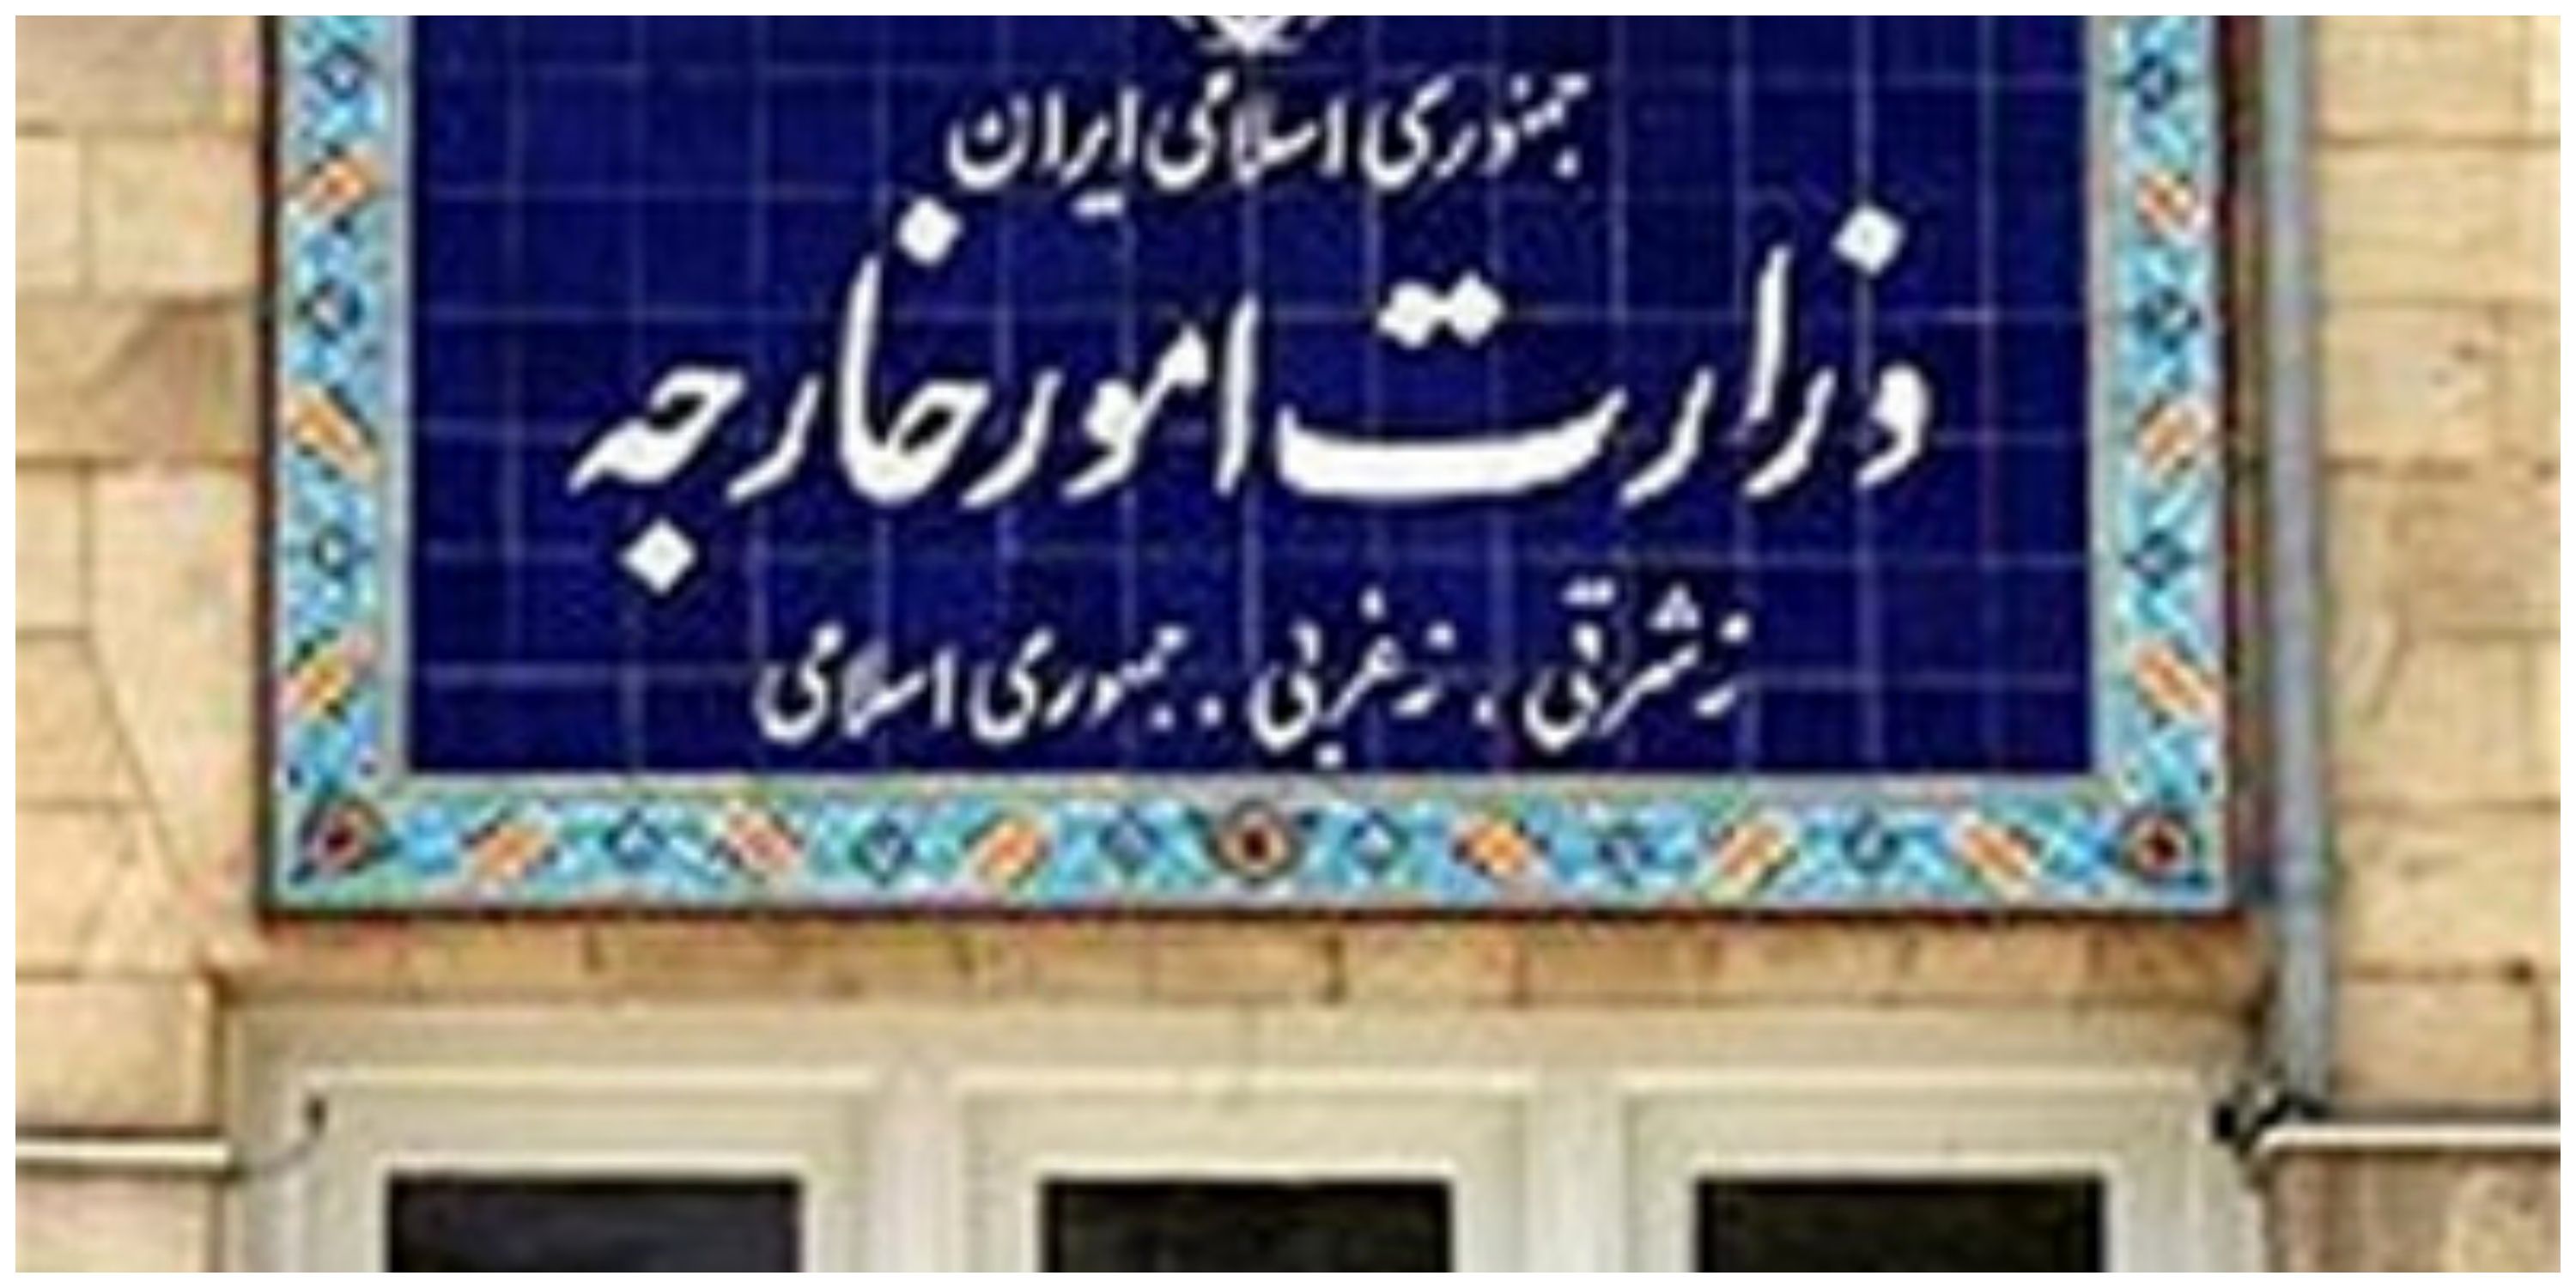 بیانیه وزارت خارجه ایران در واکنش به اعلامیه طالبان درباره حقابه هیرمند: قویا آن را رد می کنیم